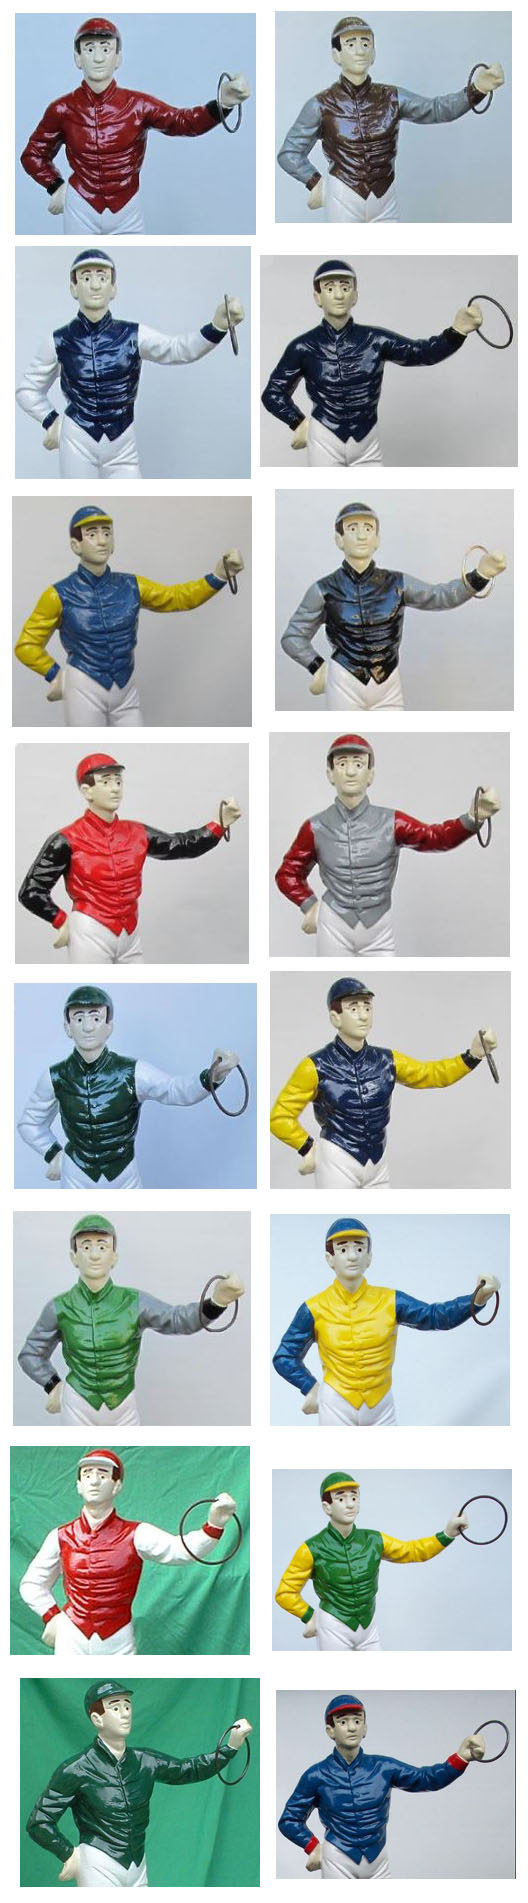 horse racing jockey statue custom colors 